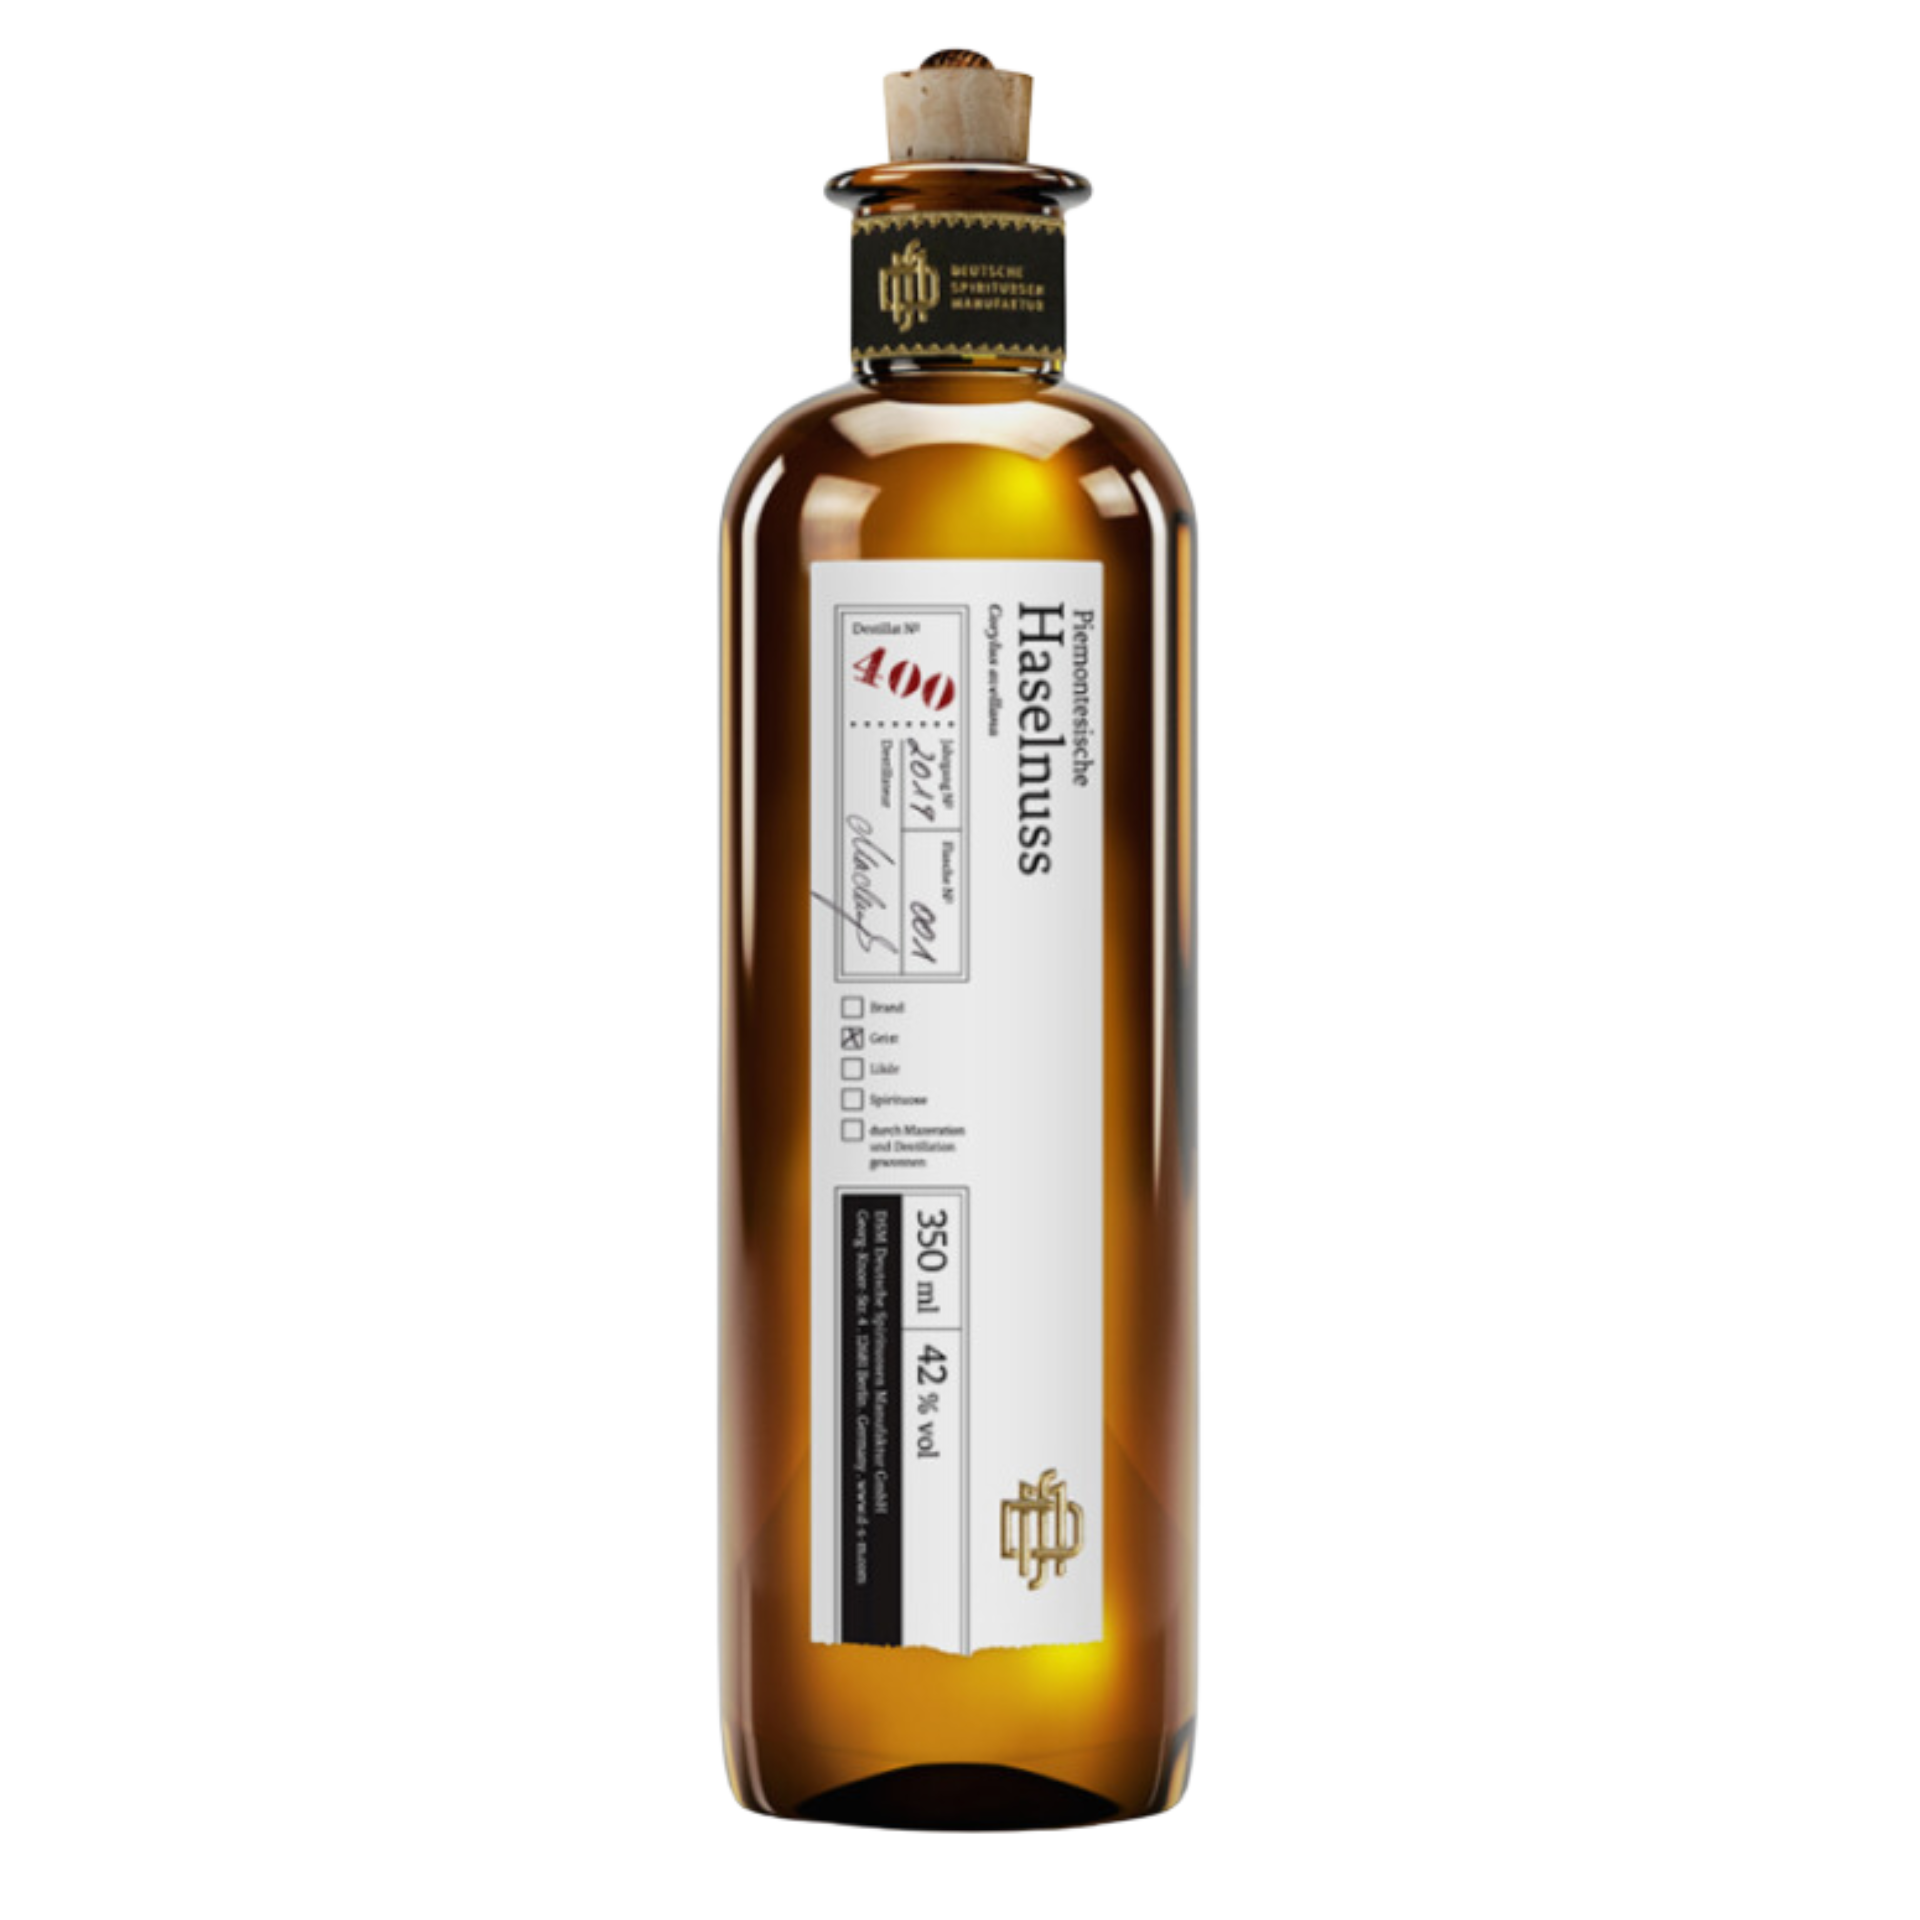 DSM Destillat 400 Piemontesische Haselnuss 42% 0,35l